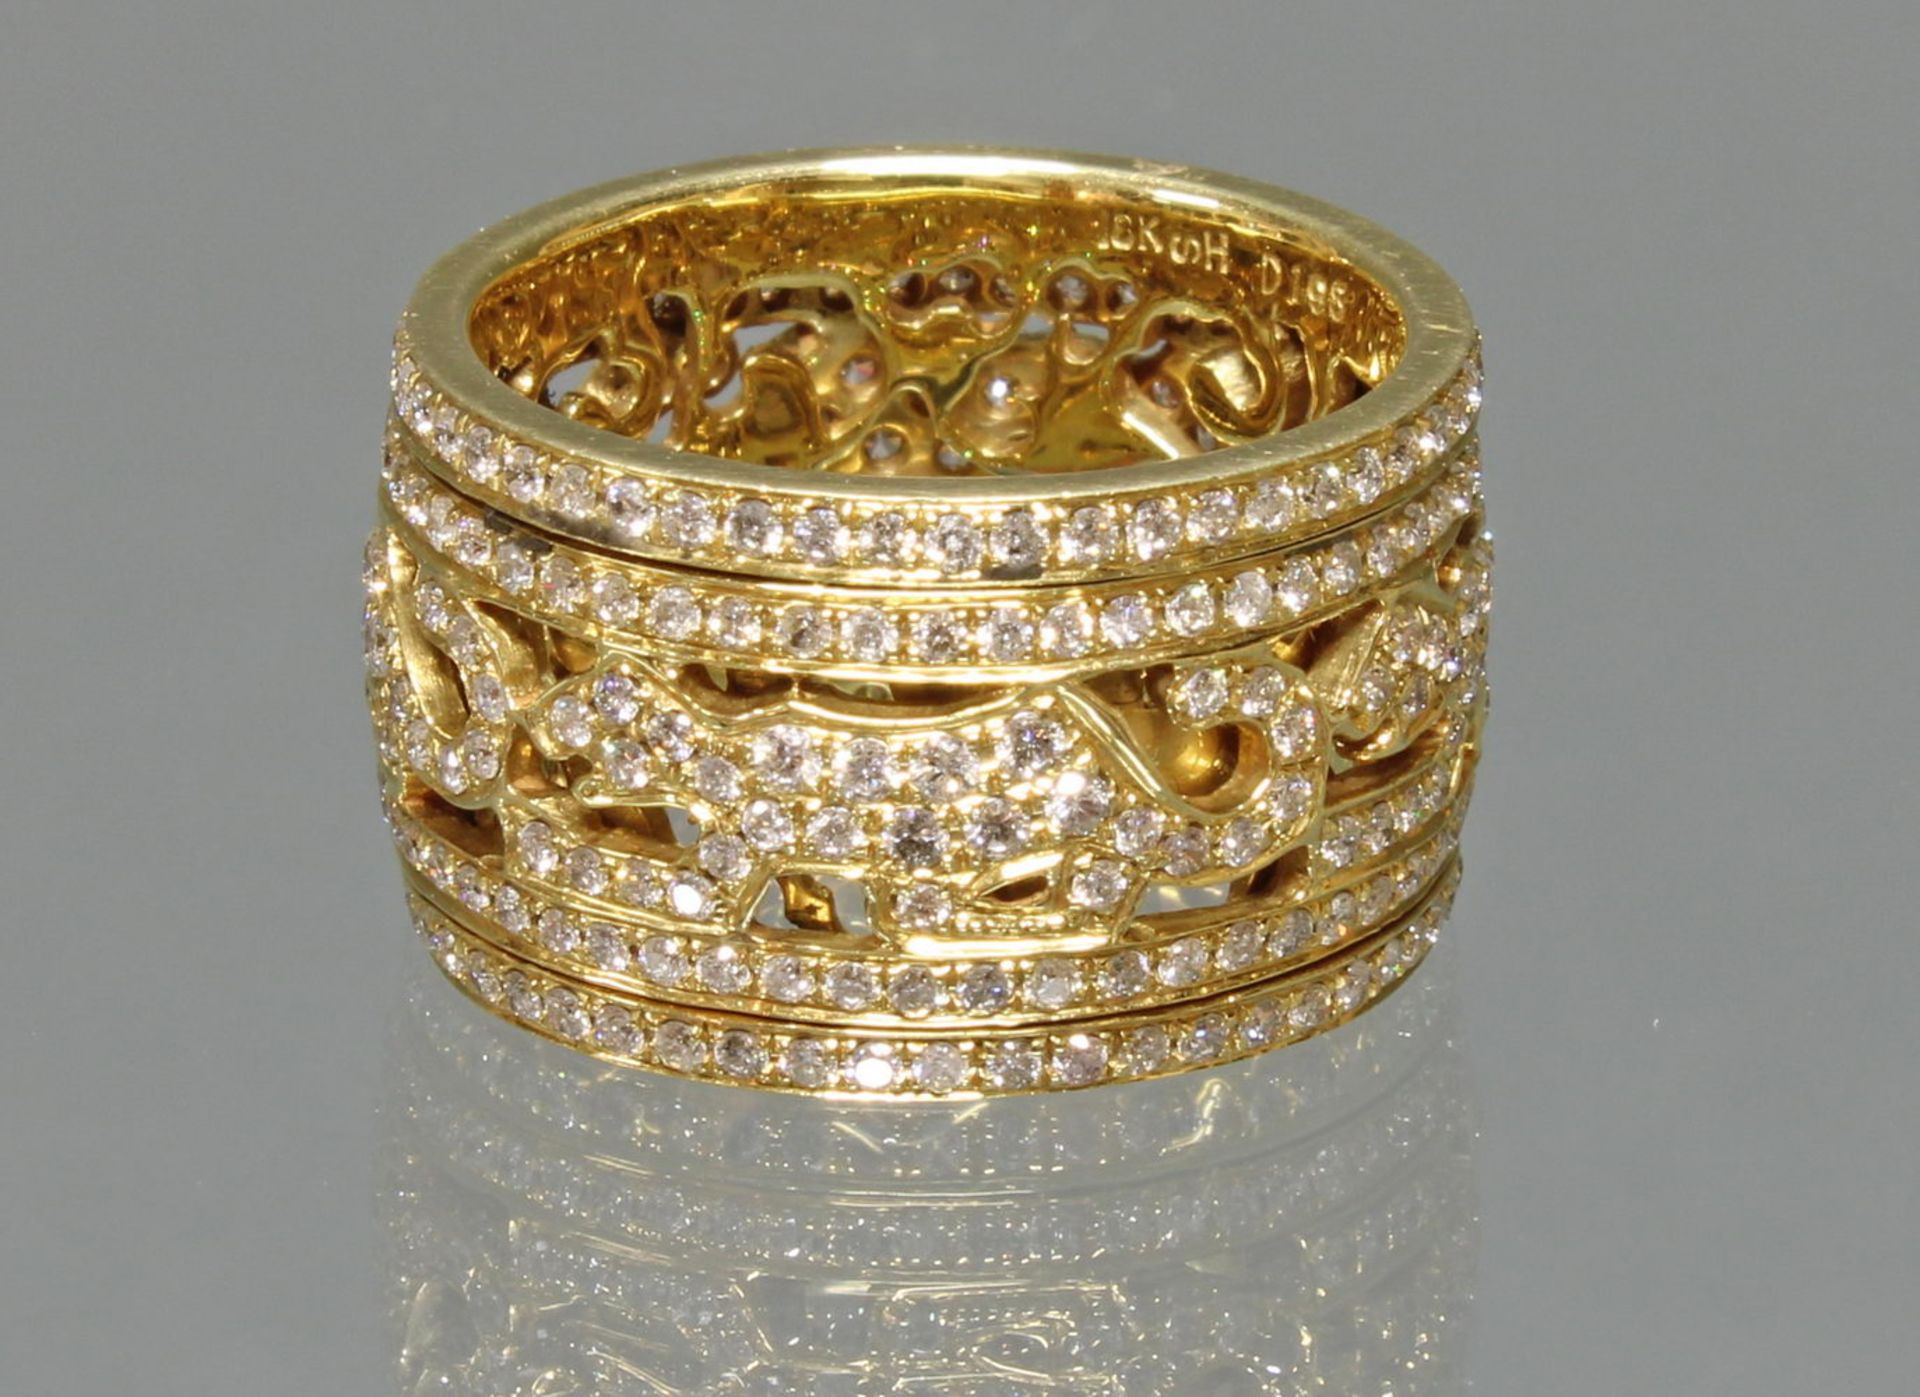 Ring, 'Panther', drehbares Mittelteil, GG 750, rundherum ausgefasst mit Brillanten zus. ca. 1.96 ct